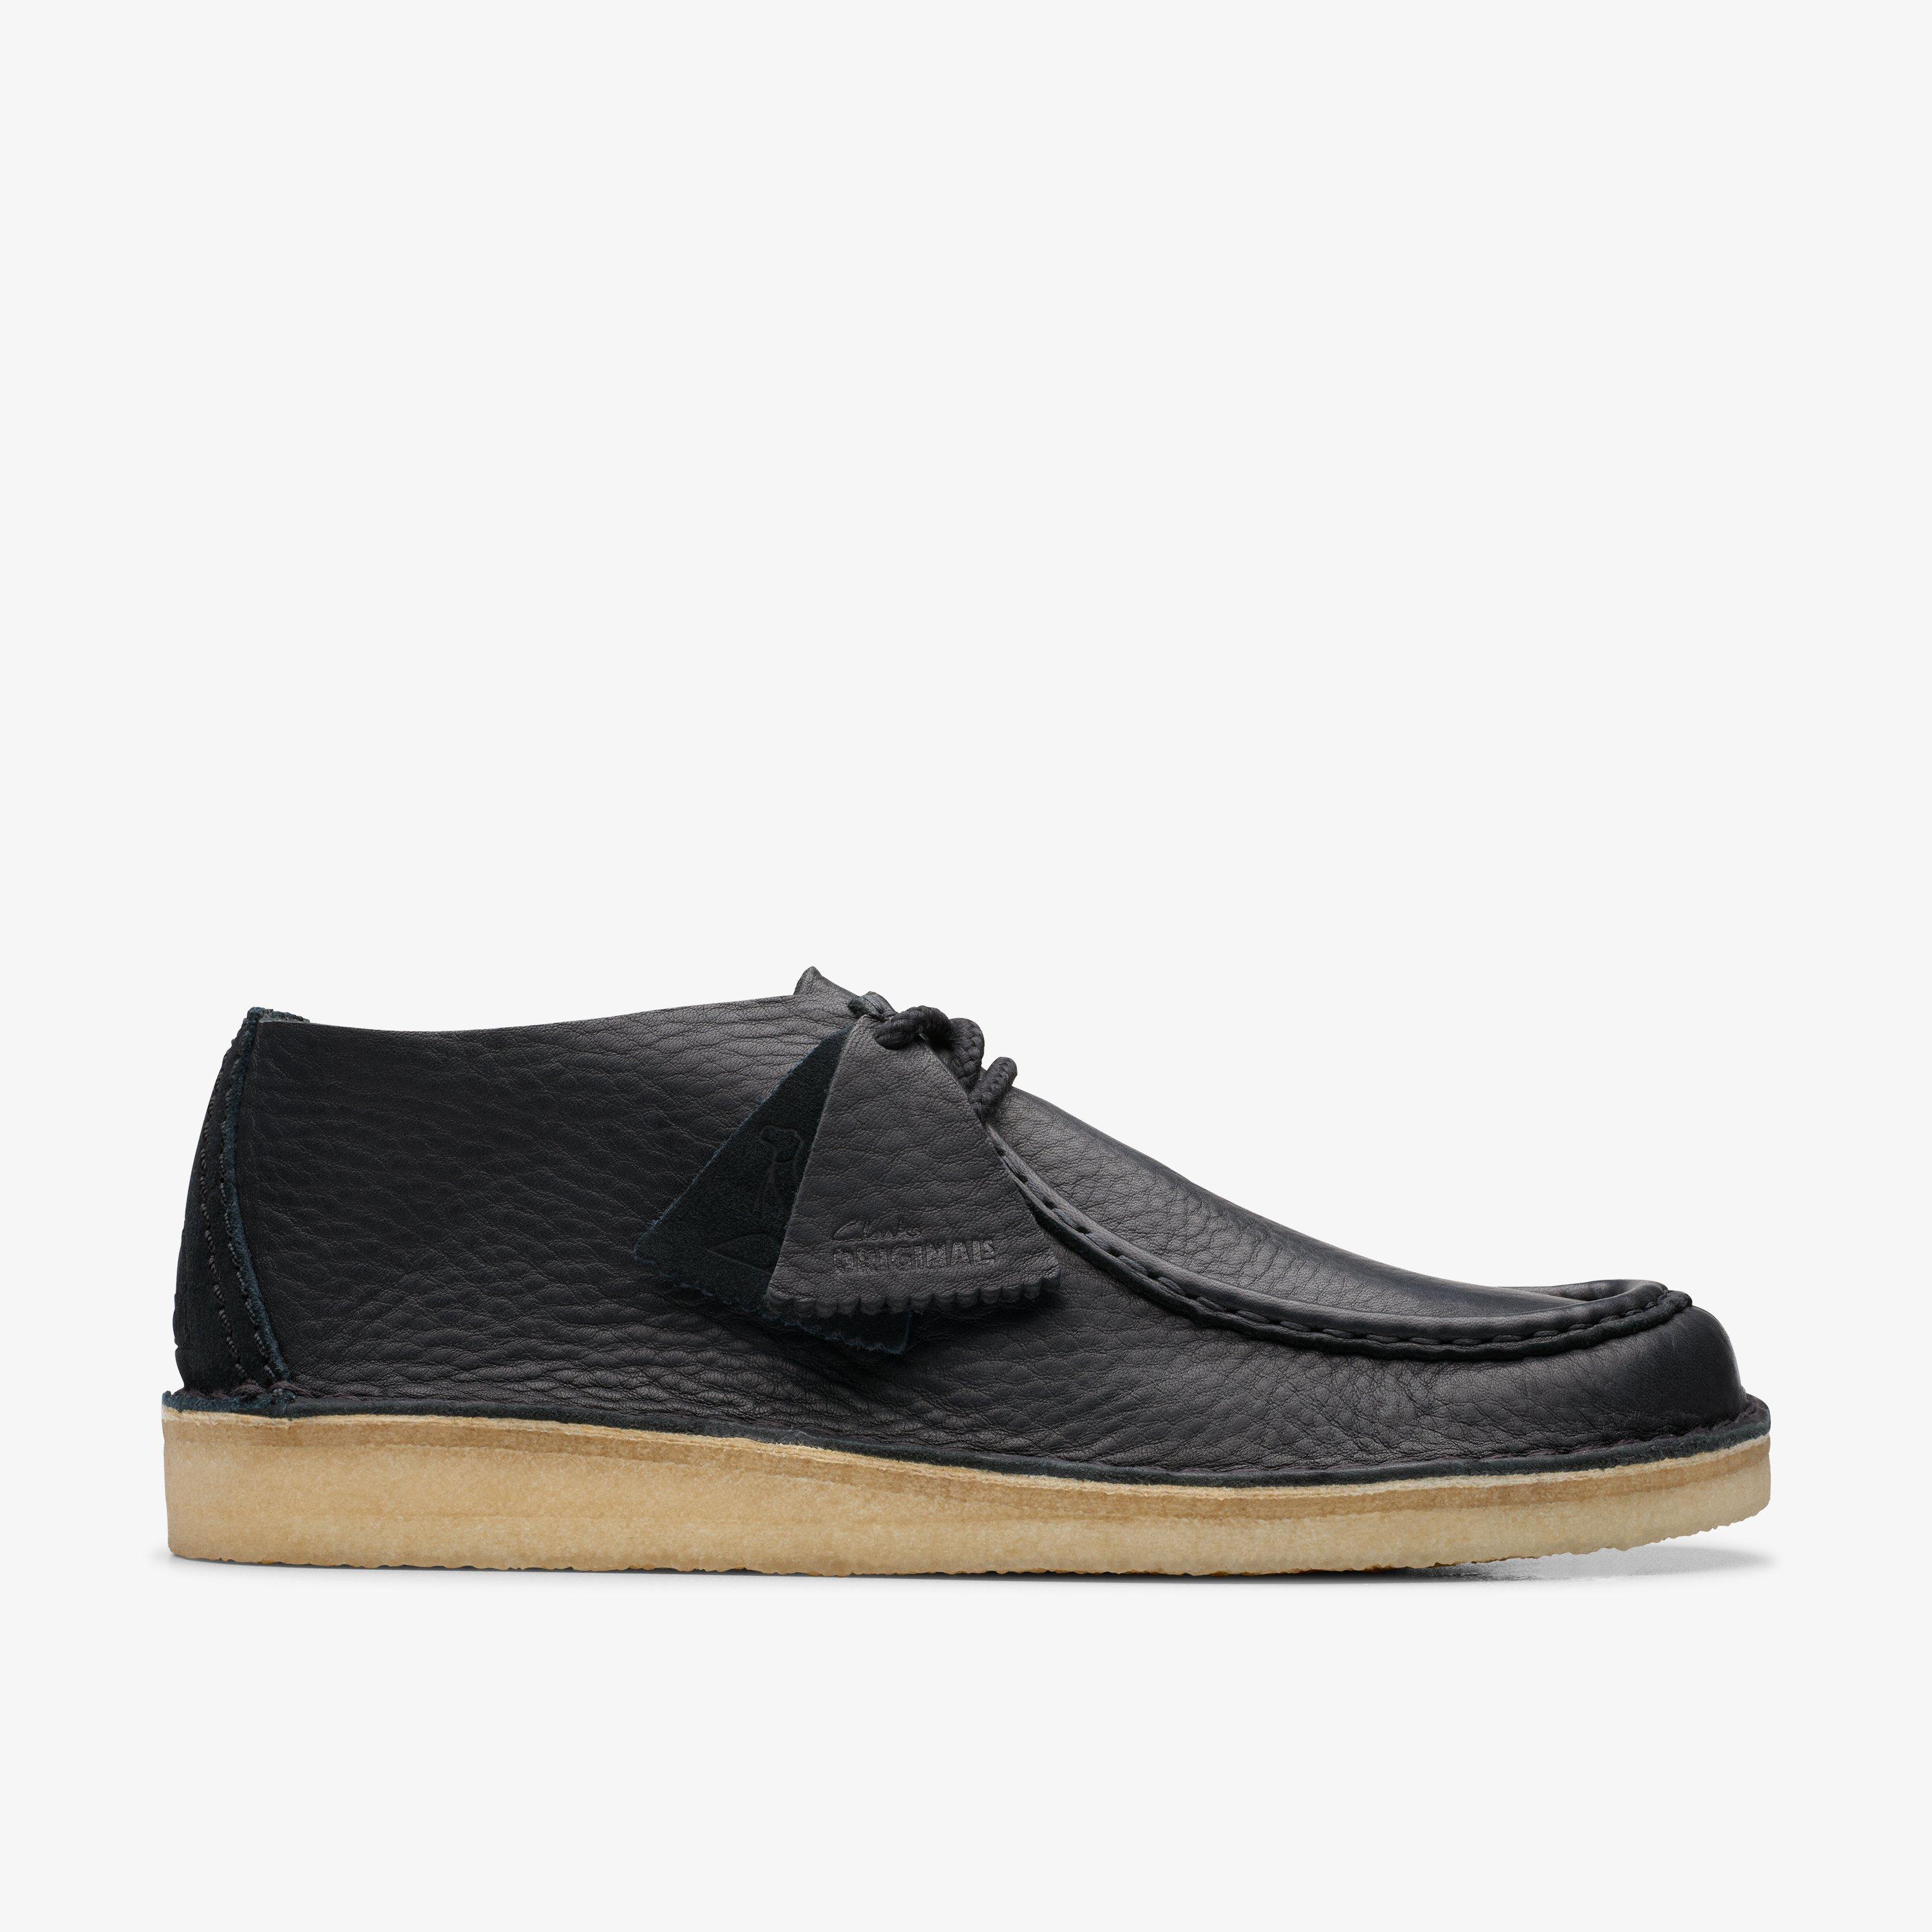 Size 12 Clarks Originals Desert Nomad Black Leather shoes